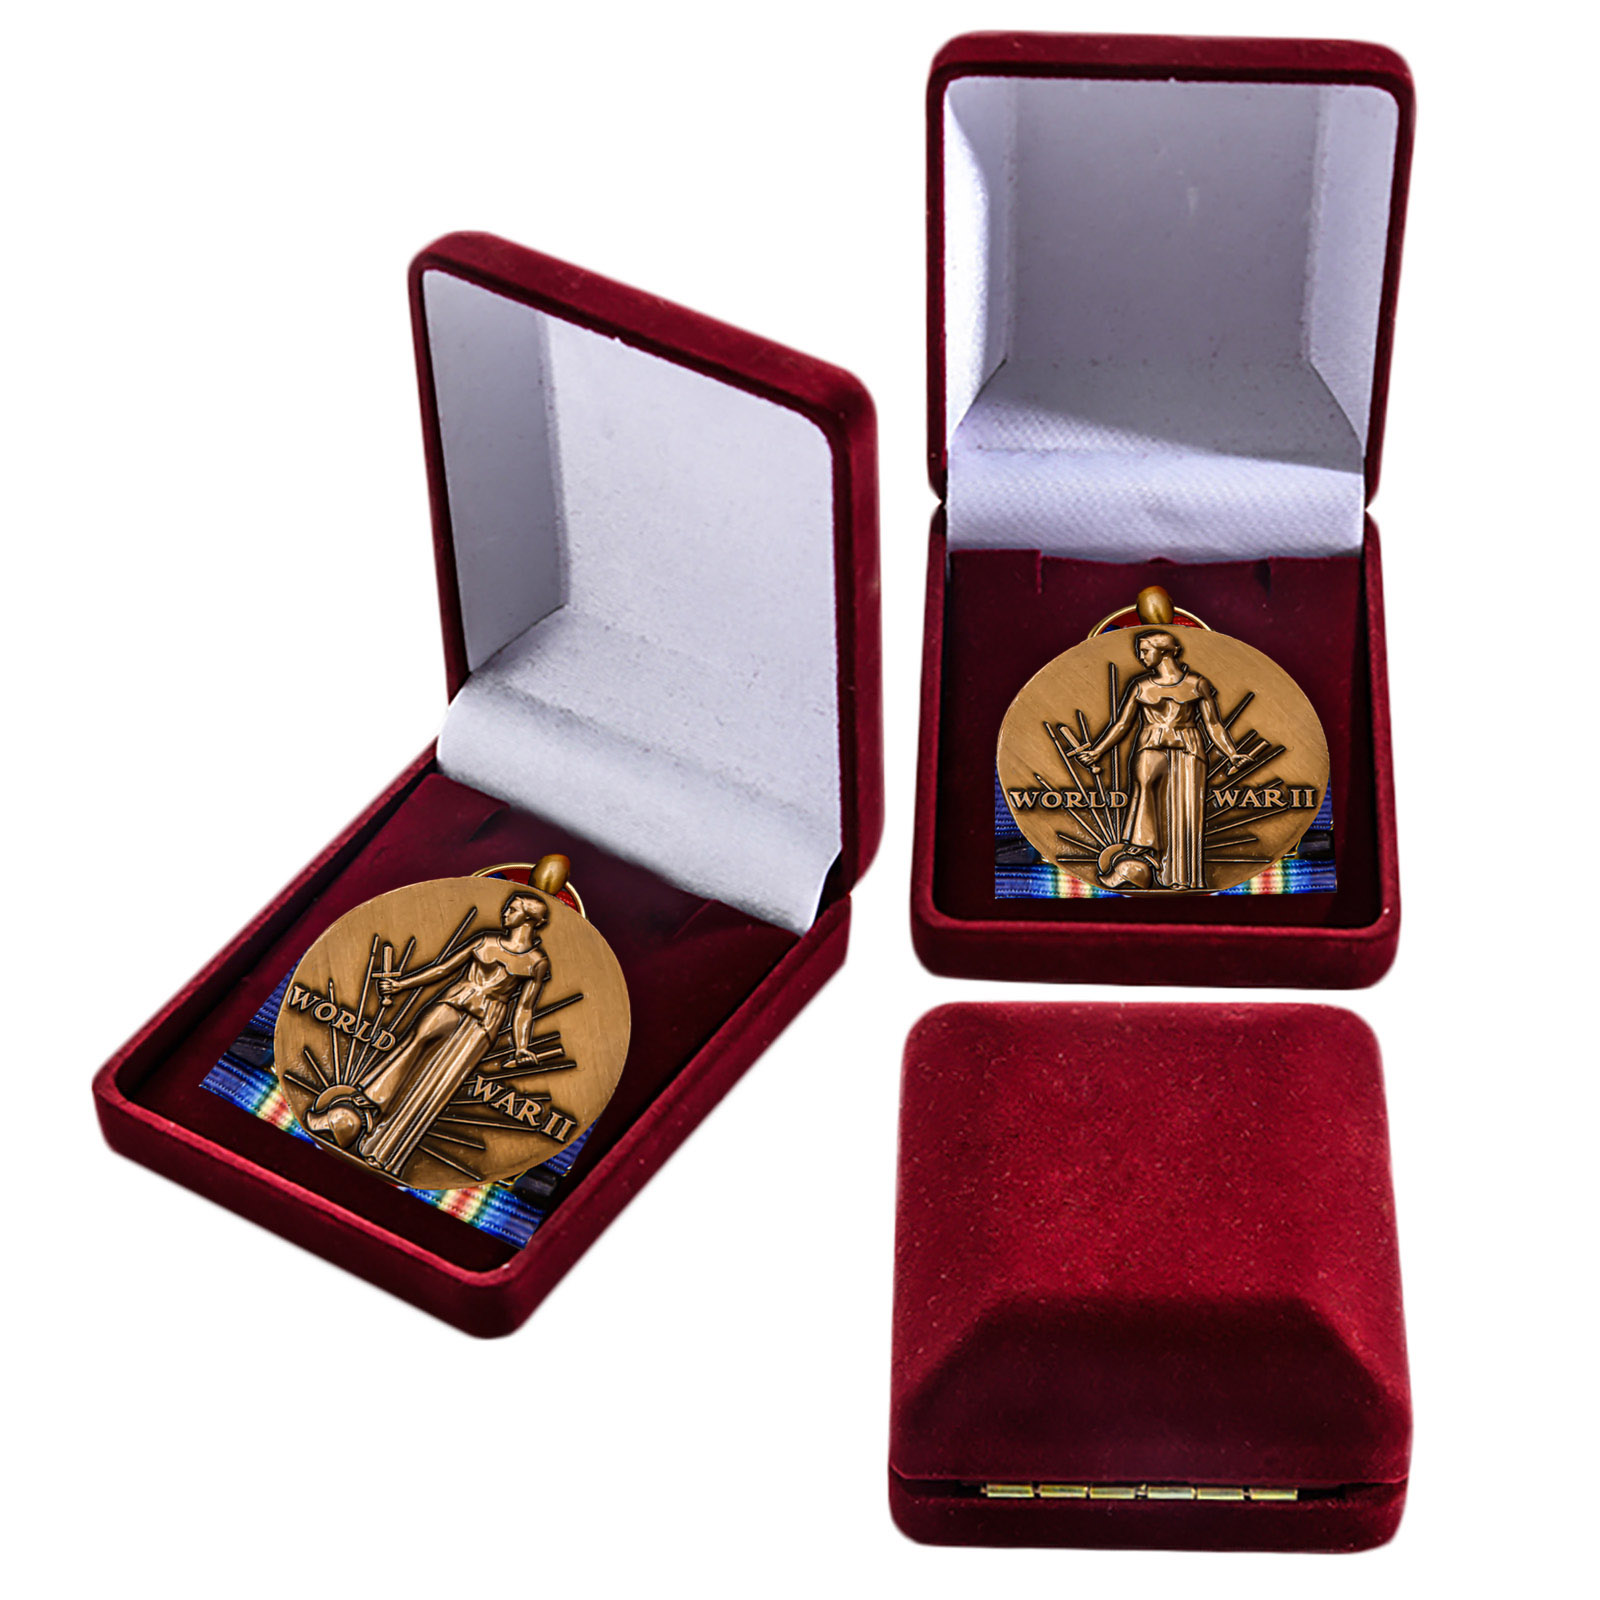 Купить американскую медаль За победу во II Мировой войне в подарок